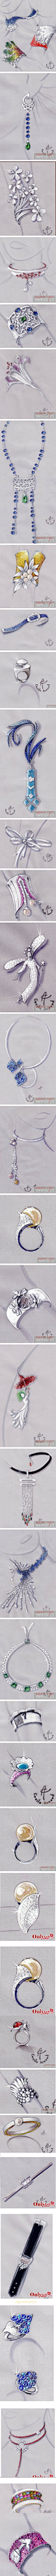 网络流传最广的法国大师Cecile Arnaud设计的手绘珠宝作品全集】（手机党小心流量）.是法国最负盛名的几位设计师之一。Cecile Arnaud品牌的珠宝在大众心目中已成为集现代主义与高品质的象征。绝美珠宝成就永恒传奇